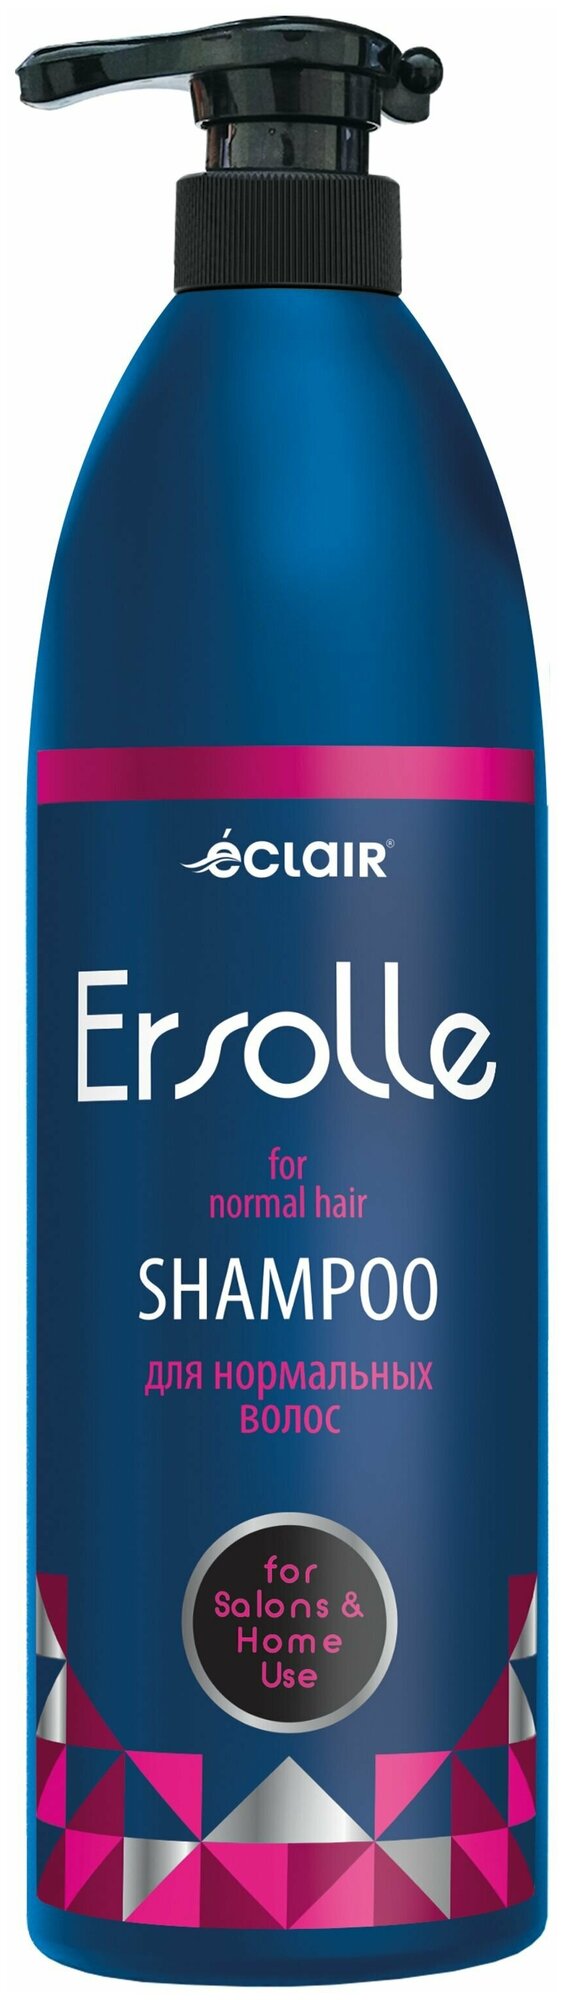 Шампунь "ERSOLLE", для нормальных волос, 1000мл